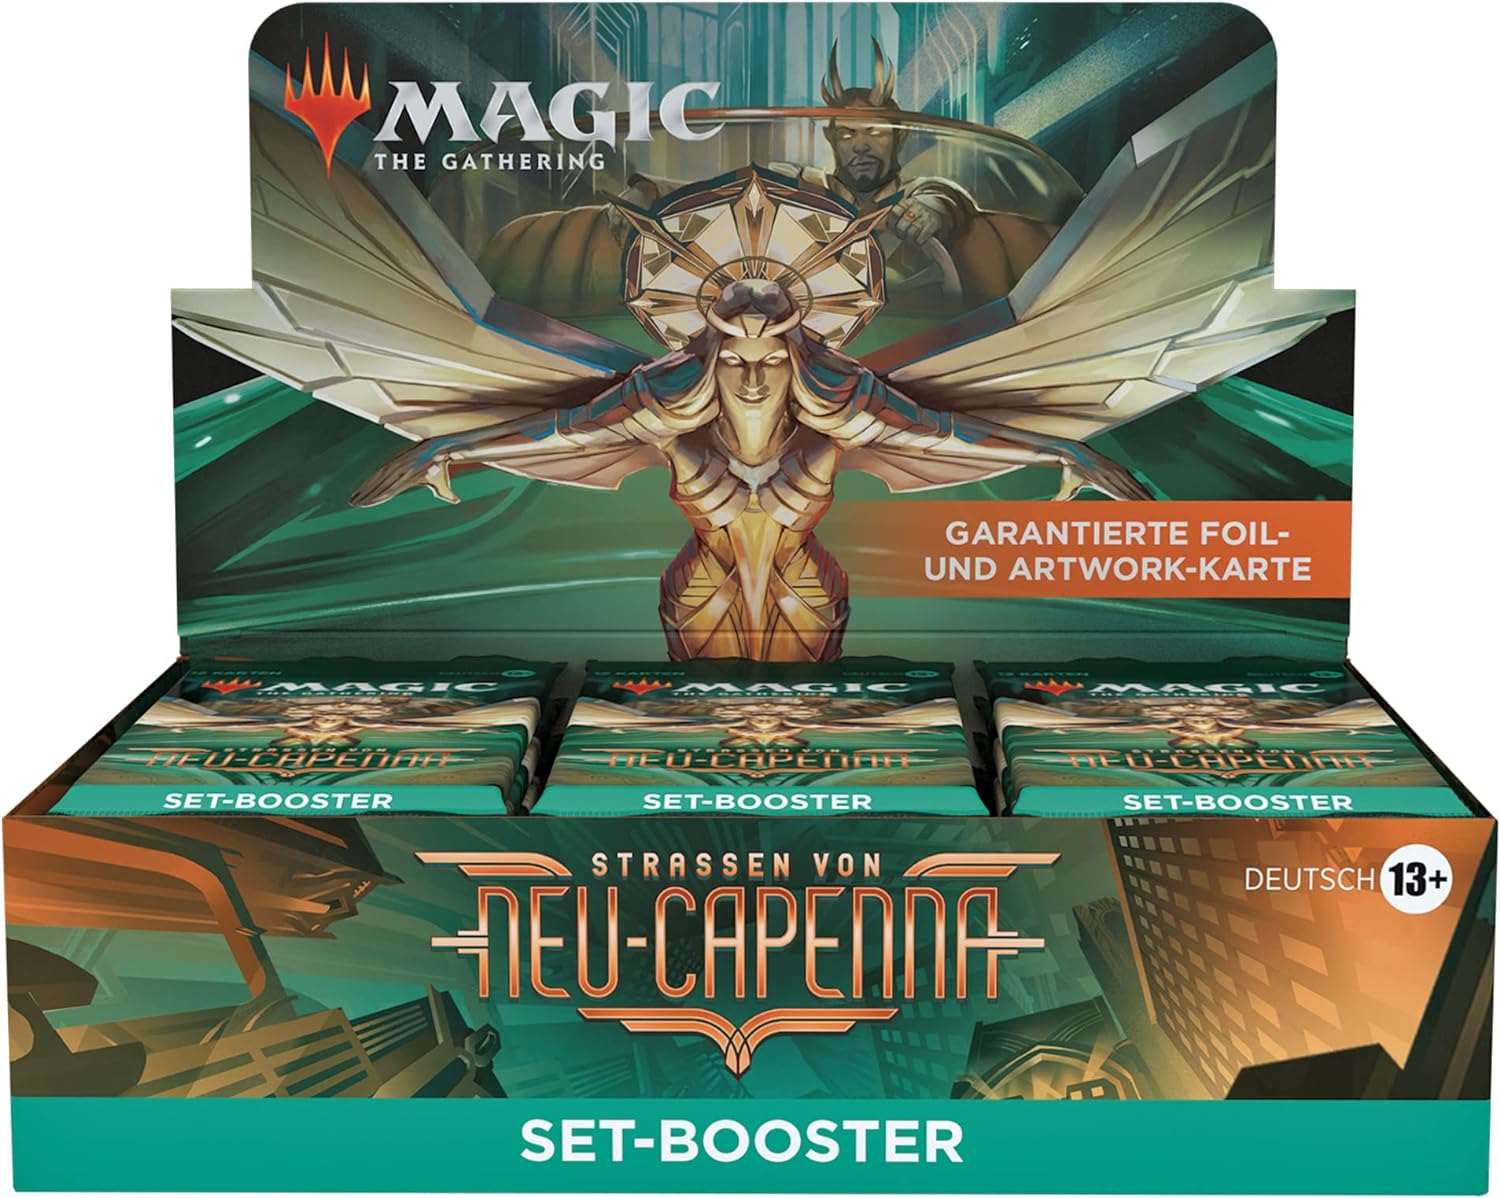 Magic: The Gathering - Straßen von Capenna Set Booster Display - DE - CardCosmos